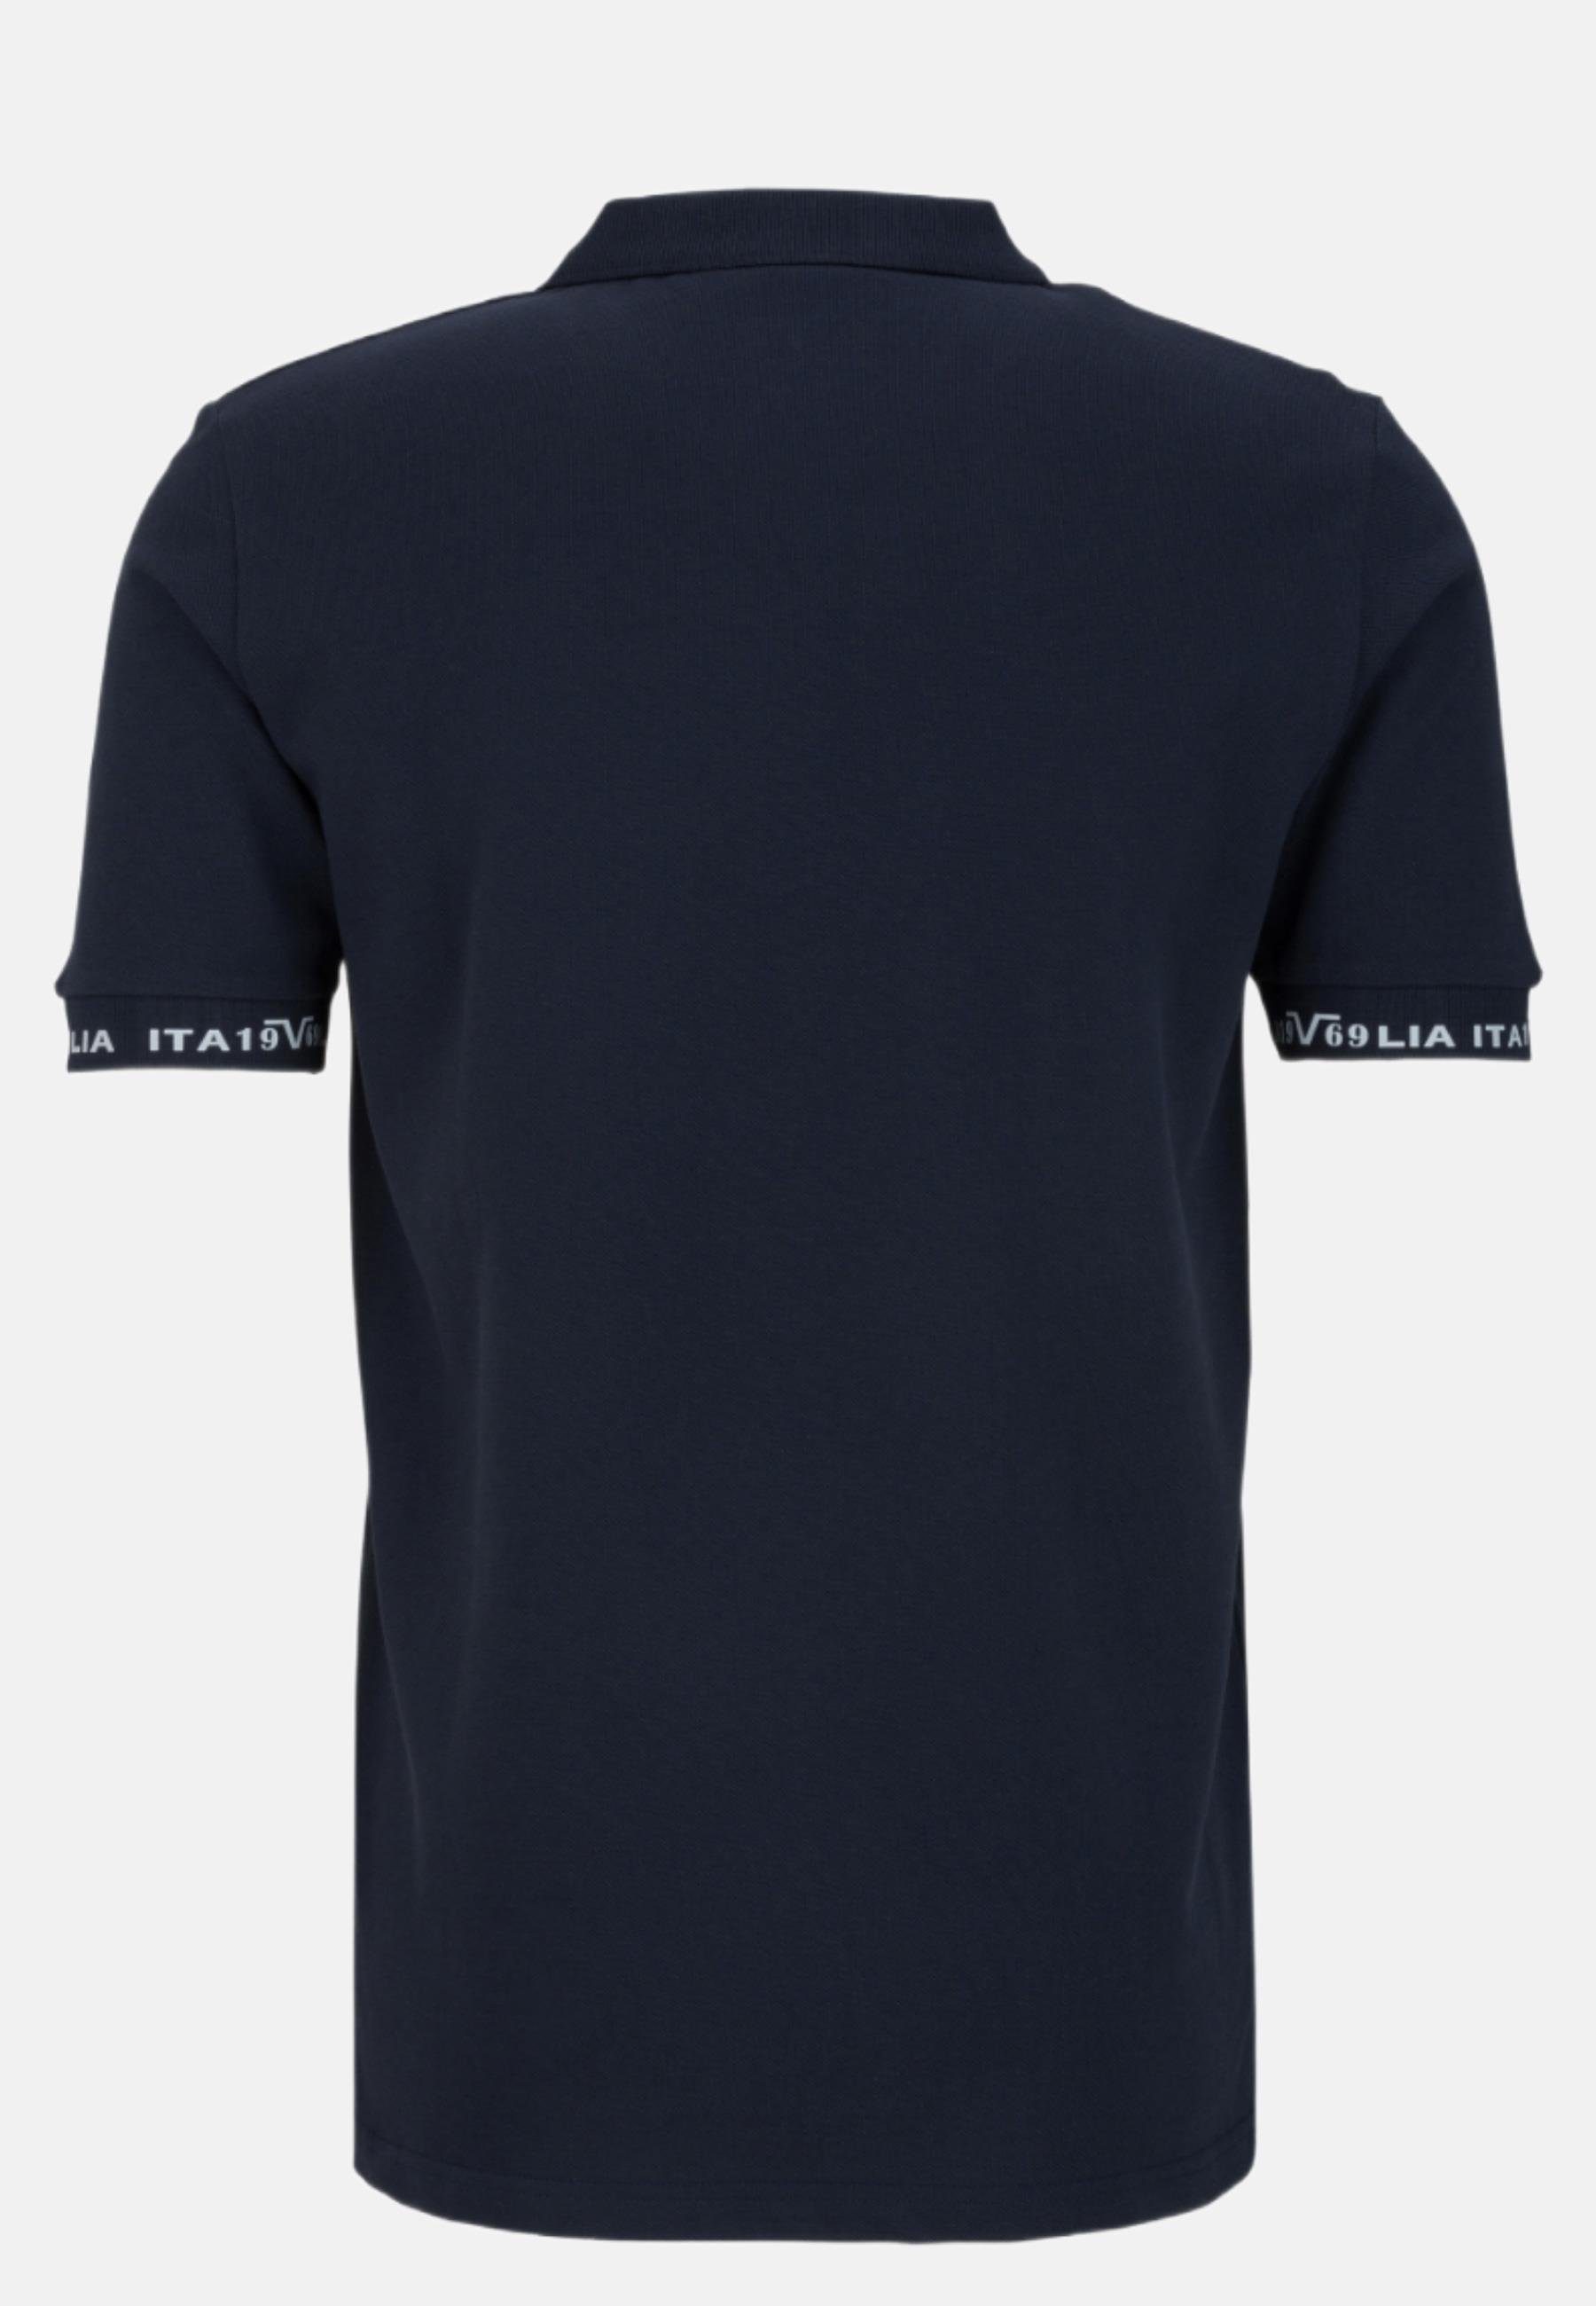 Harry Shirt Polo Versace blau T-Shirt 19V69 by Italia